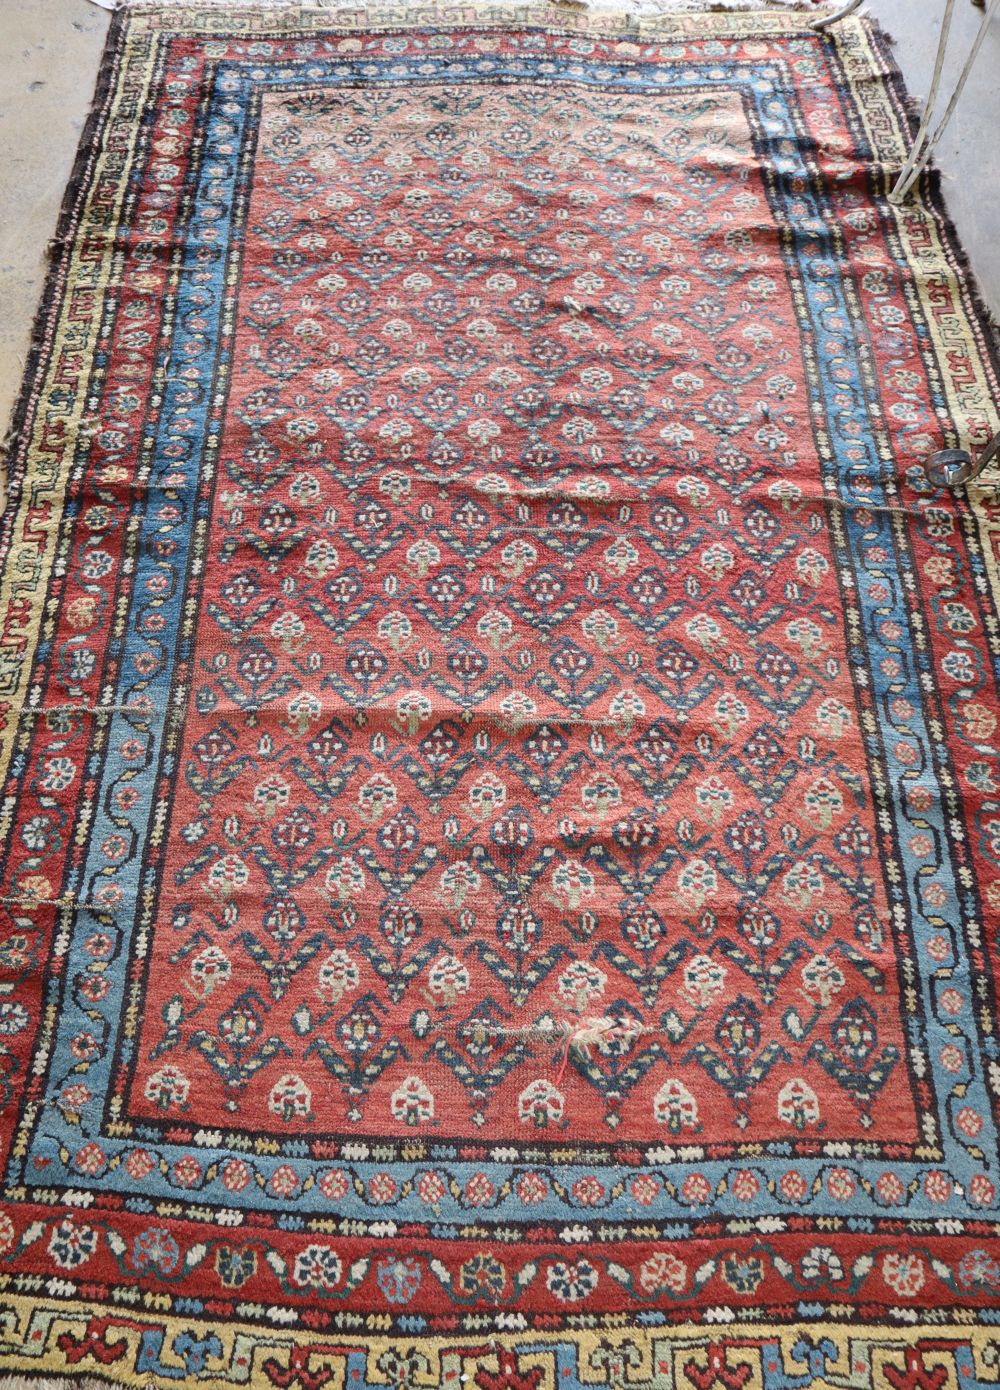 A Kurdish red ground rug, 220 x 140cm